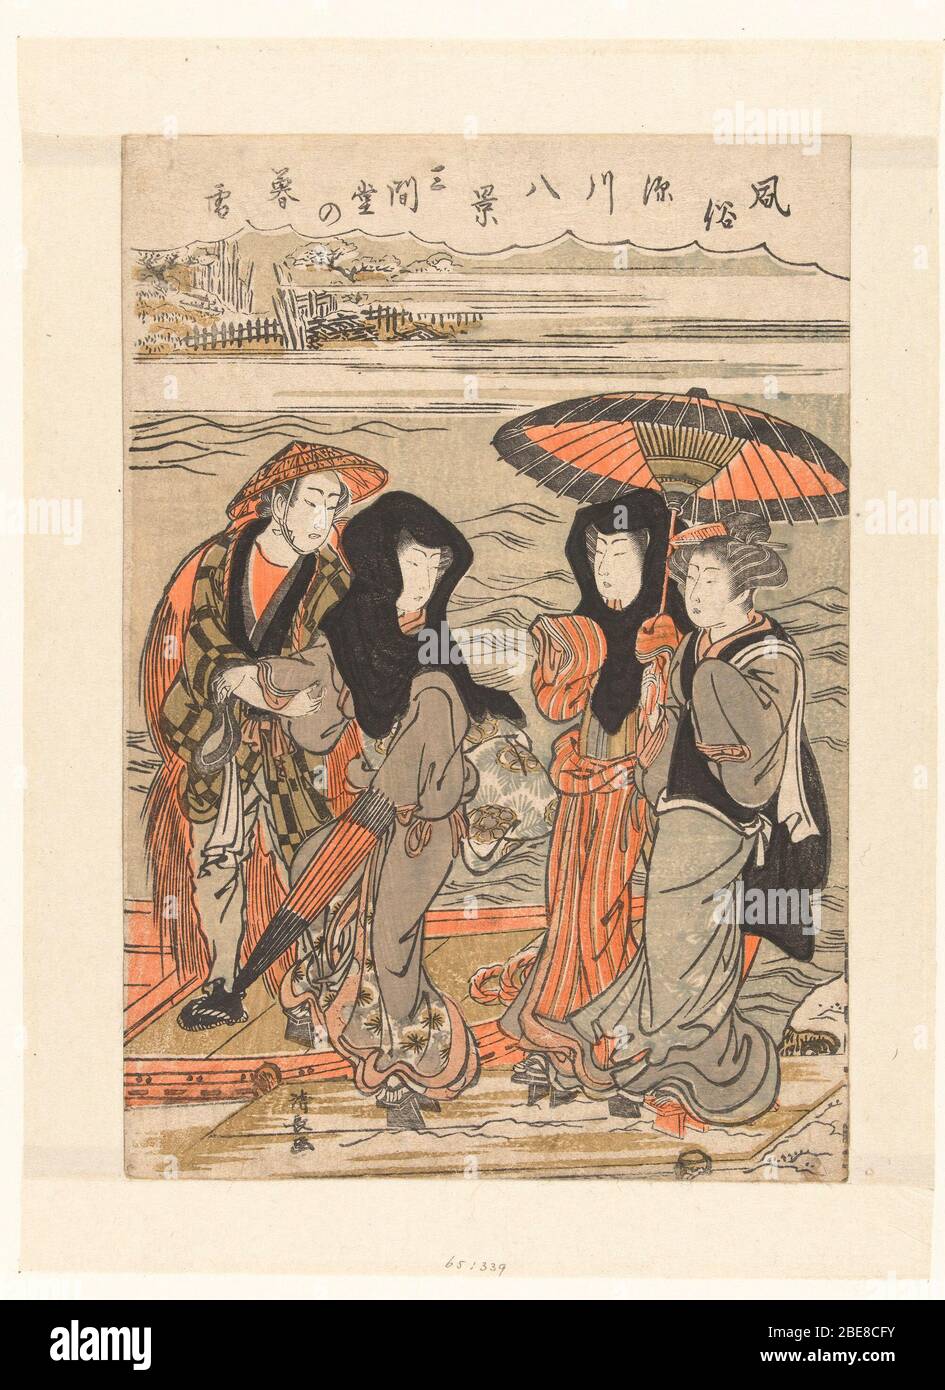 'Avondestornuw te Sangendo; Nederlands: Veerman, een vrouw met zwarte hoofddoek in zijn boot helpend; beiden kijkend naar tweede vrouw met zwarte hoofddoek, staand met servierster van theehuis, onder een paraplu, op besneeuwde steiger. Op of achtergrond mist en gezicht op een houtwerf. Etiqueta: Mencionado en el objeto Torii Kiyonaga (1752 - 28-jun-1815), 1776 - 1780, kleurenhoutsnede; lijnblok en zwart met kleurblokken Colección: Prenten; Japón (colectie); entre 1776 y 1780 fecha QS:P571,+1750-00-00T00:00:1776-T0019:T009-T0019 00:00-T009, T009-T009-00-T0019:1780:T009-T0019:T009-T0019-T0019-T0019-T0019-00-T009; T009-T009 Foto de stock